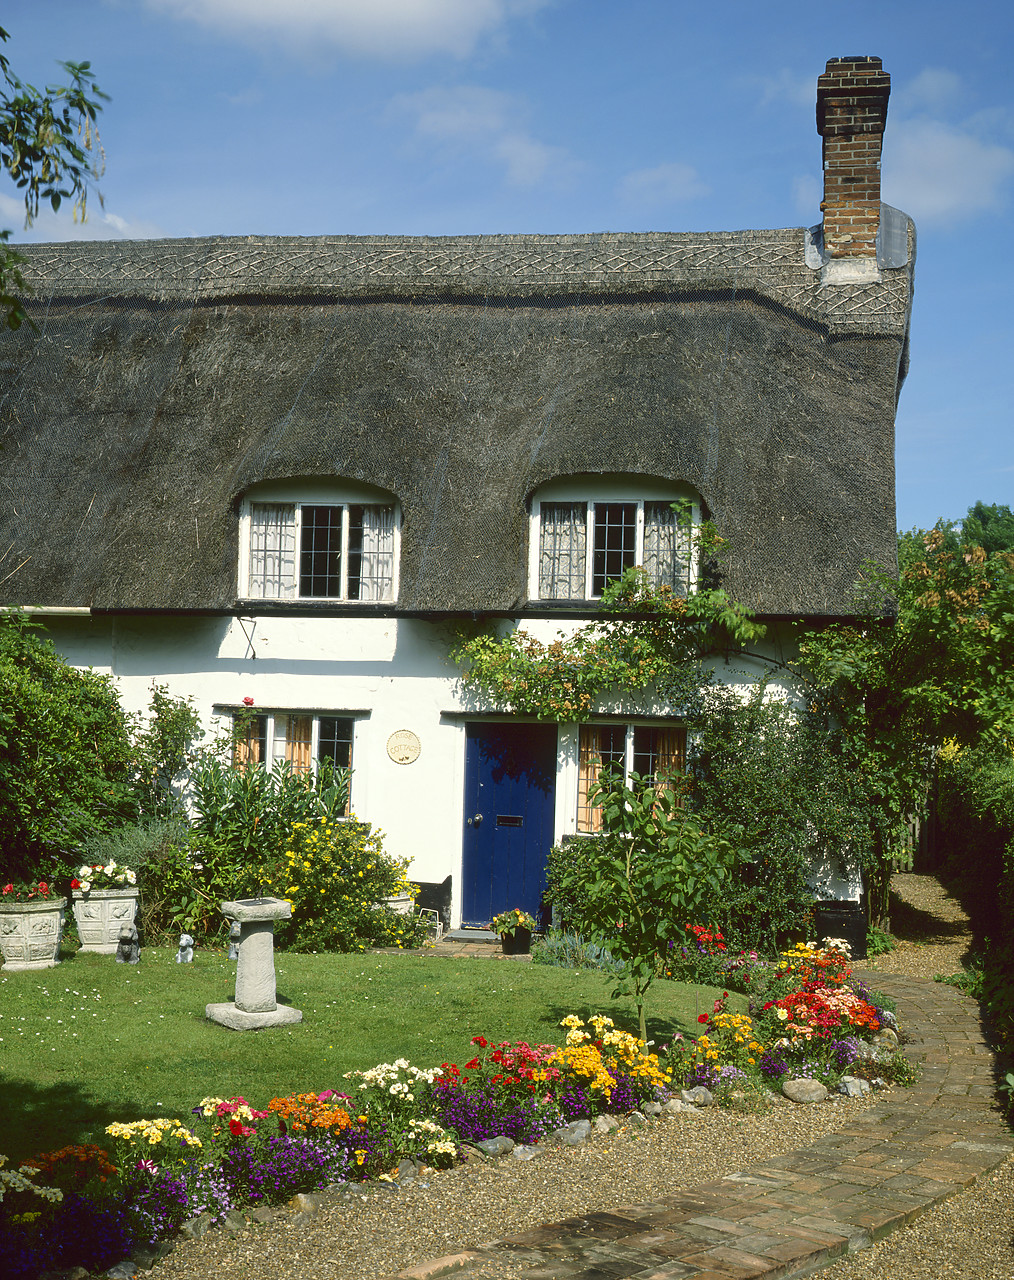 #881538-2 - Thatch Cottage & Garden, Brooke, Norfolk, England